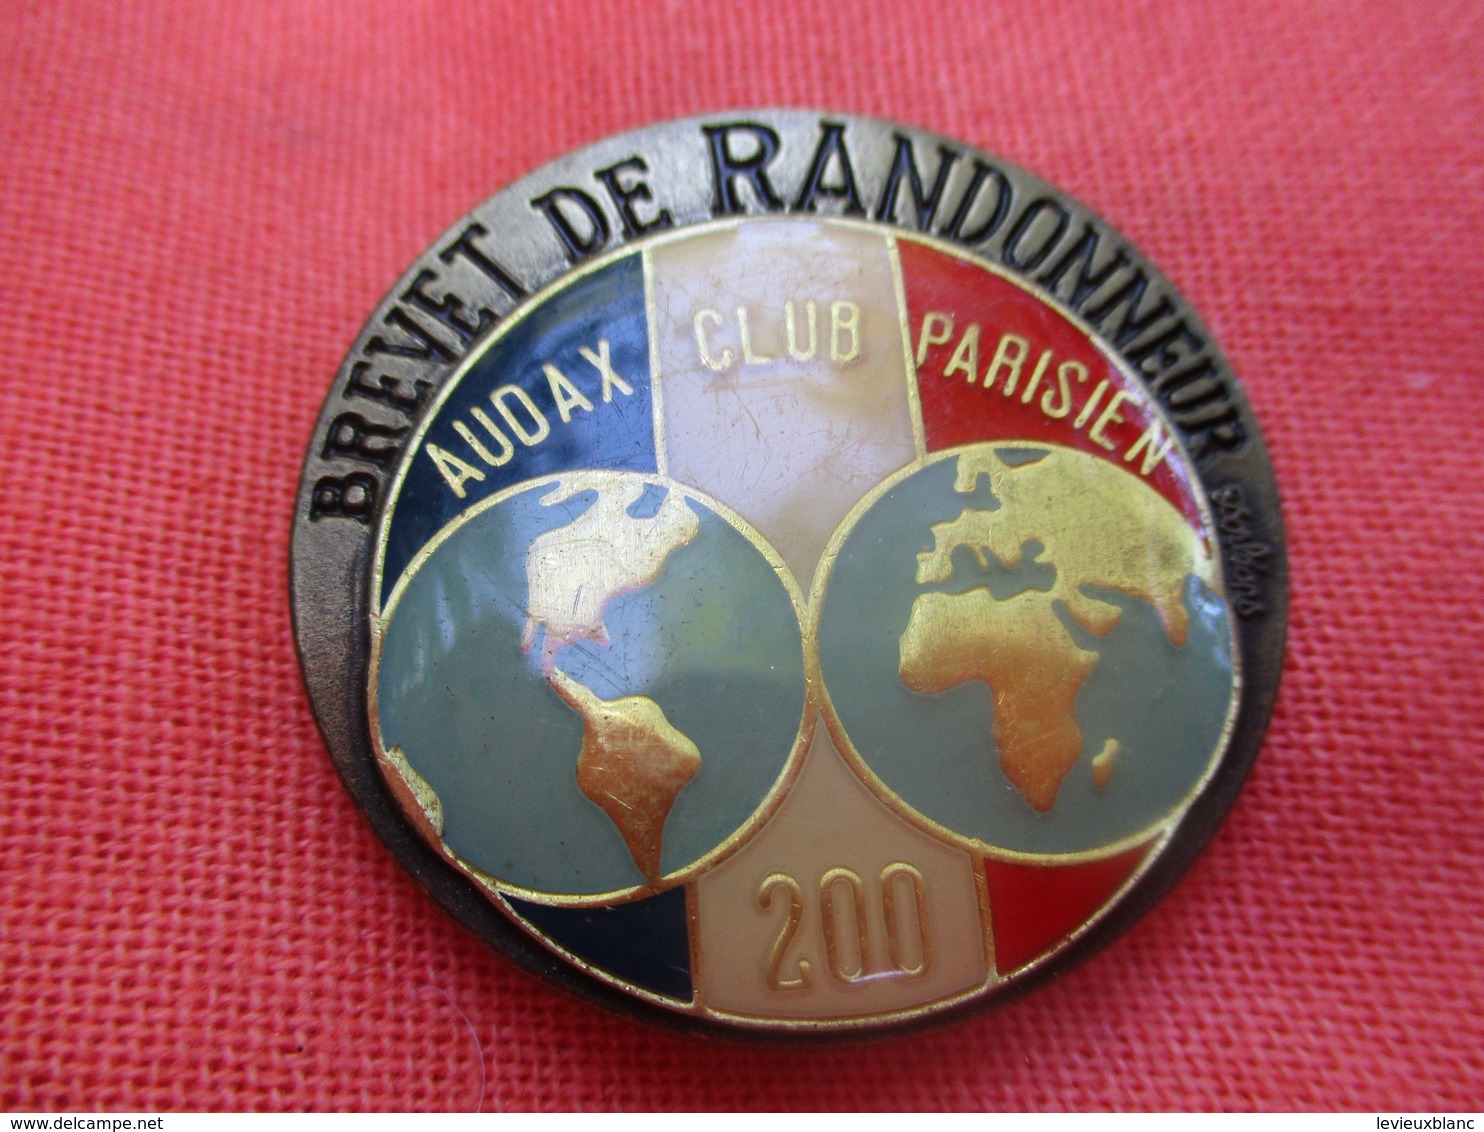 Insigne De Sport  à épingle/ Cyclisme/  Audax Club Parisien/Brevet De RANDONNEUR/200 Km/Beraudy/Vers 1980         SPO304 - Cyclisme